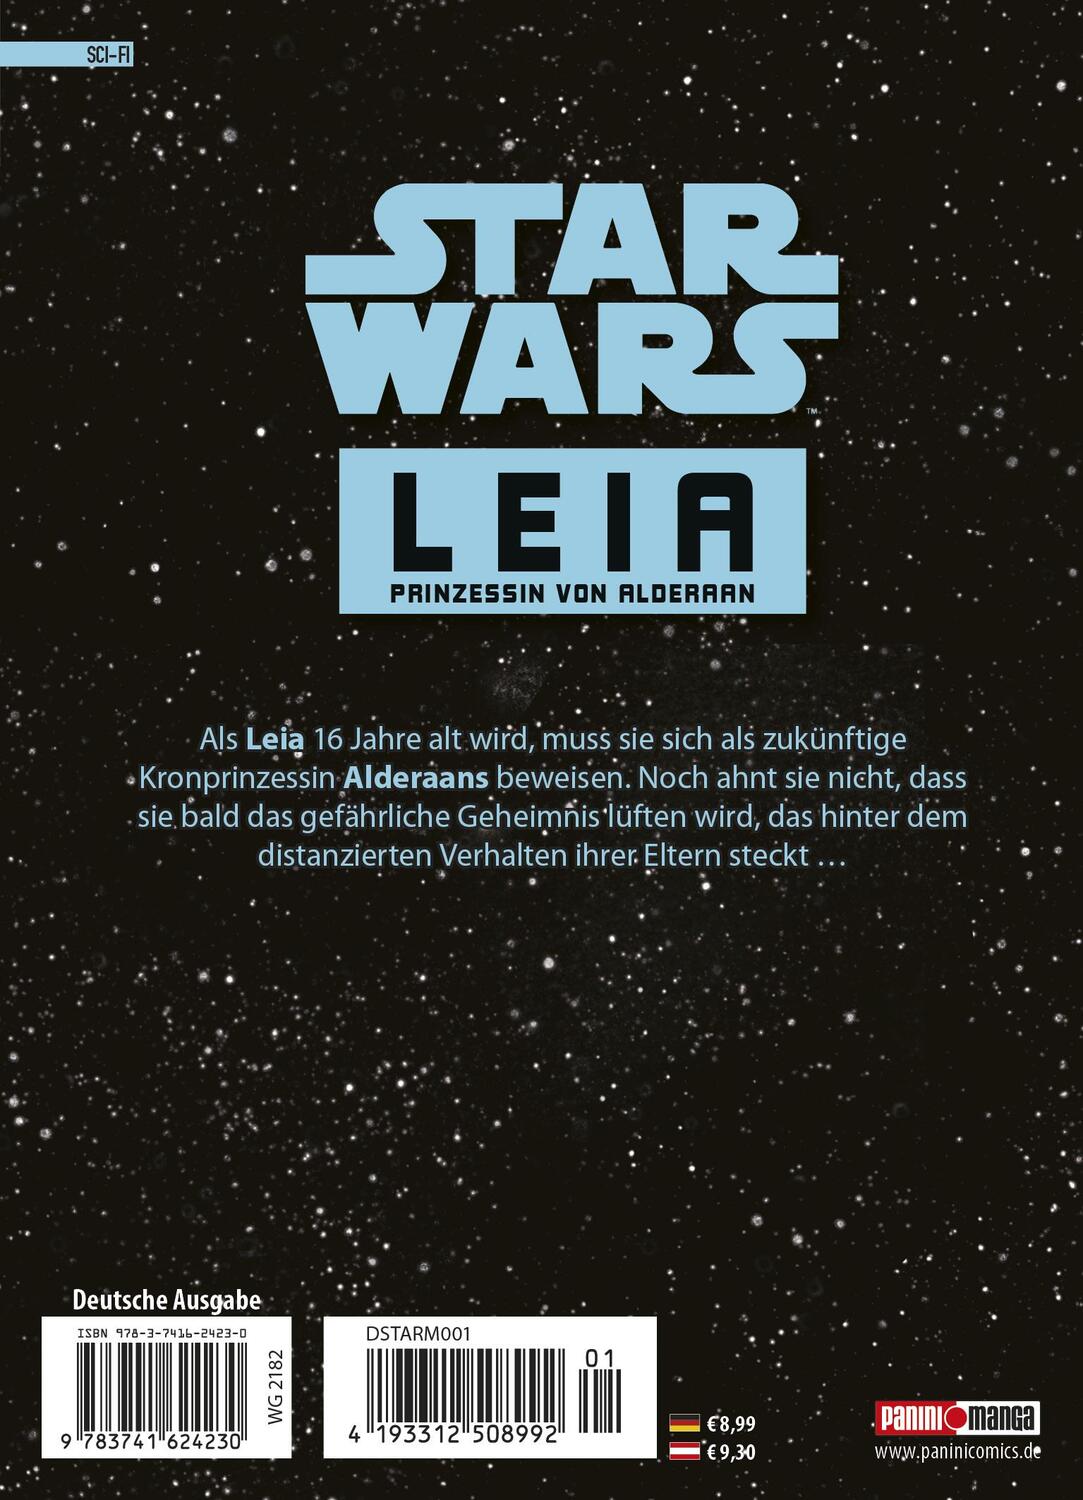 Rückseite: 9783741624230 | Star Wars - Leia, Prinzessin von Alderaan (Manga) 01 | Bd. 1 | Buch